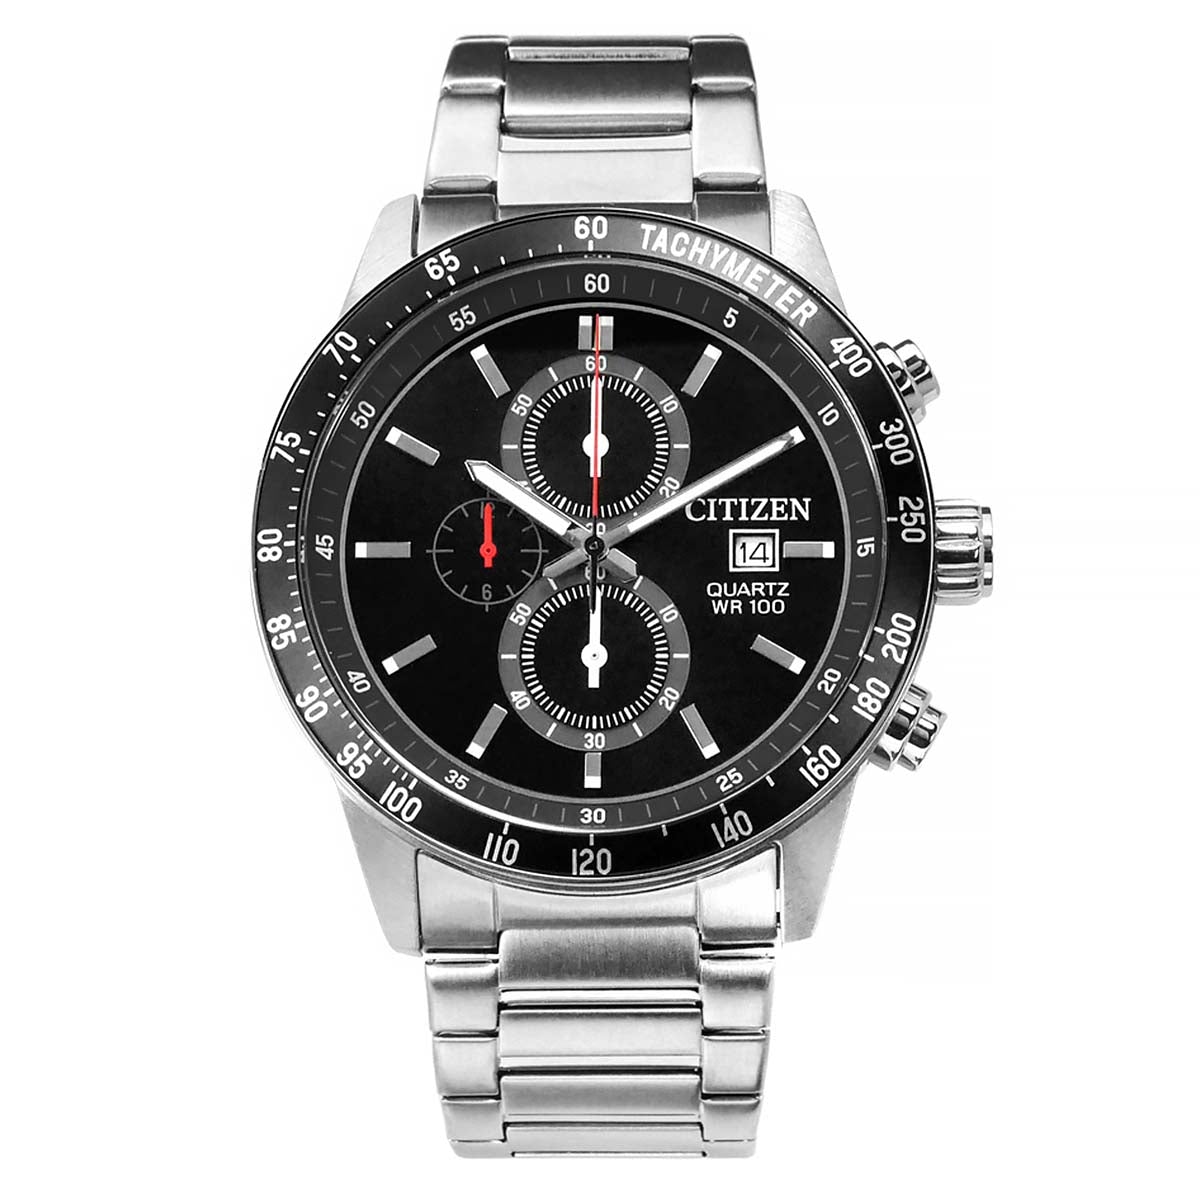 Citizen - AN3600-59E - Quartz Chronograph Stainless Steel Watch For Men